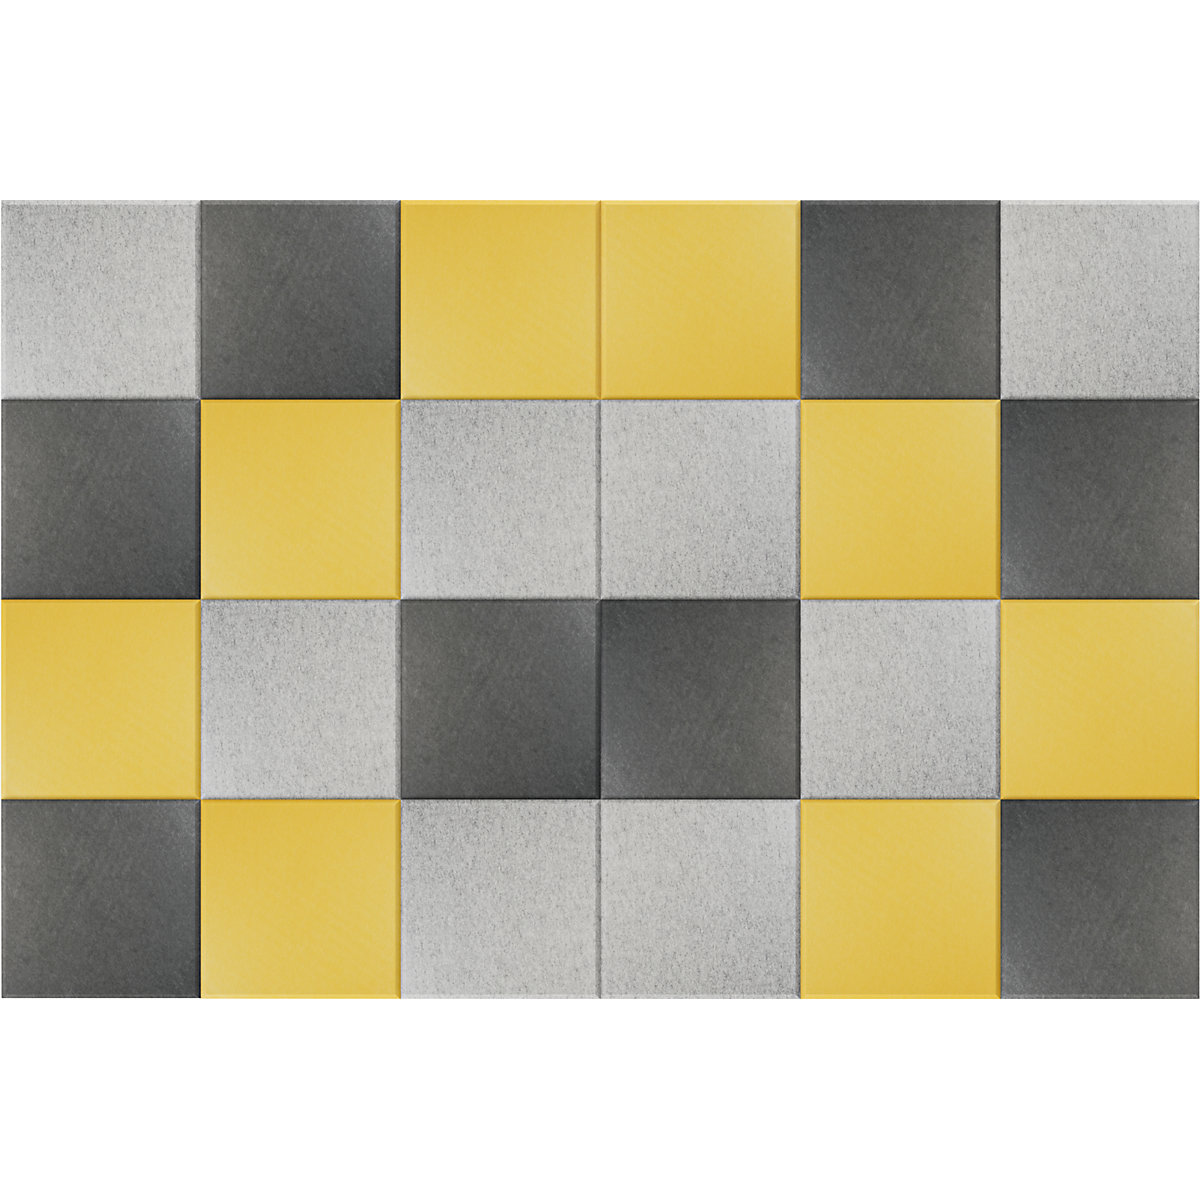 Carreau mural acoustique – eurokraft basic, h x l 300 x 300 mm, lot de 24, 8 de chaque: jaune, gris clair, gris foncé-8